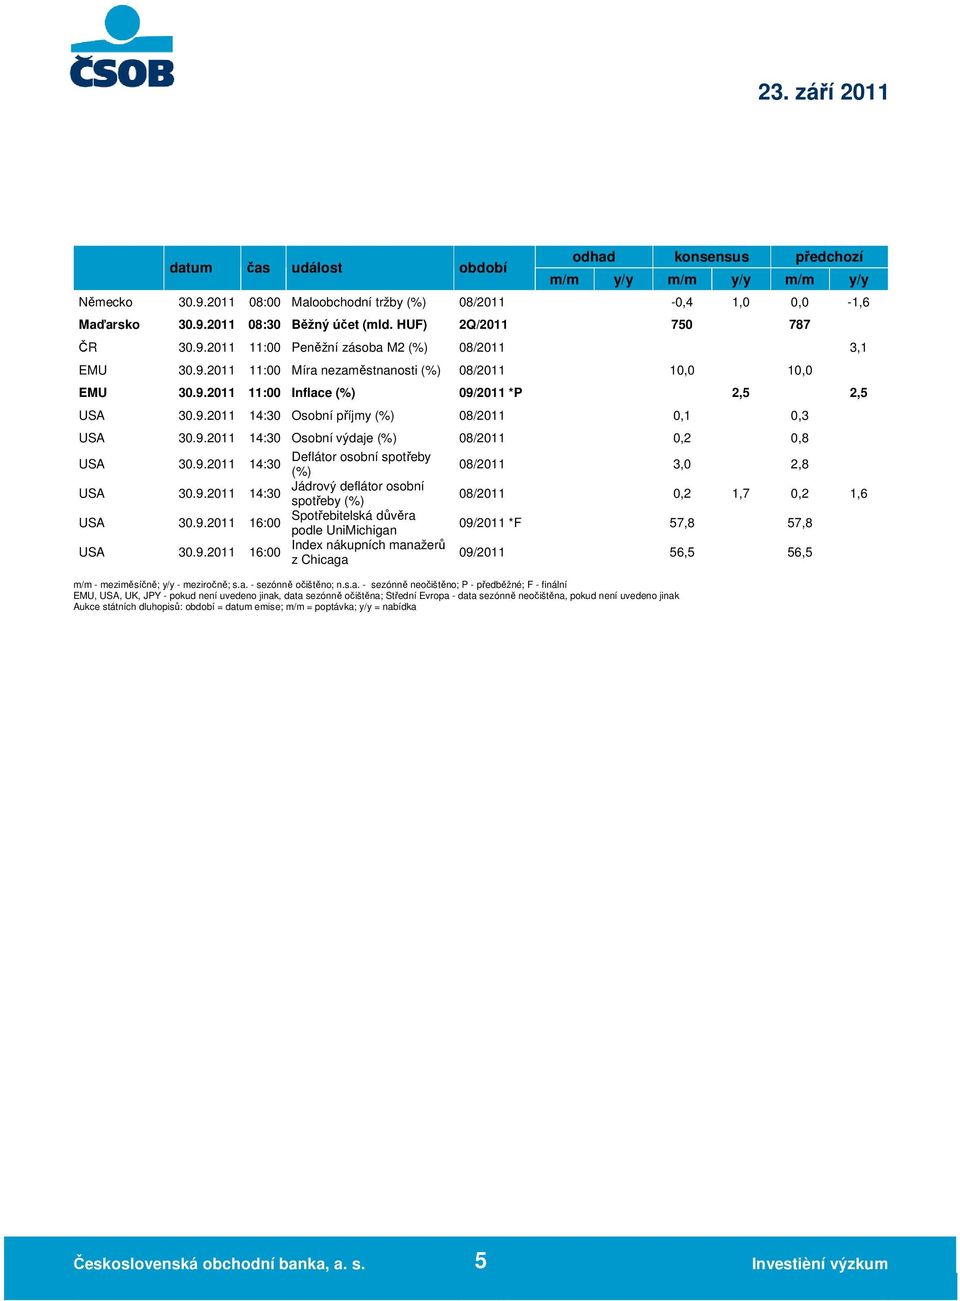 9.2011 Osobní výdaje (%) 08/2011 0,2 0,8 30.9.2011 Deflátor osobní spotřeby (%) 08/2011 3,0 2,8 30.9.2011 Jádrový deflátor osobní spotřeby (%) 08/2011 0,2 1,7 0,2 1,6 30.9.2011 Spotřebitelská důvěra 16:00 podle UniMichigan 09/2011 *F 57,8 57,8 Index nákupních manažerů 30.